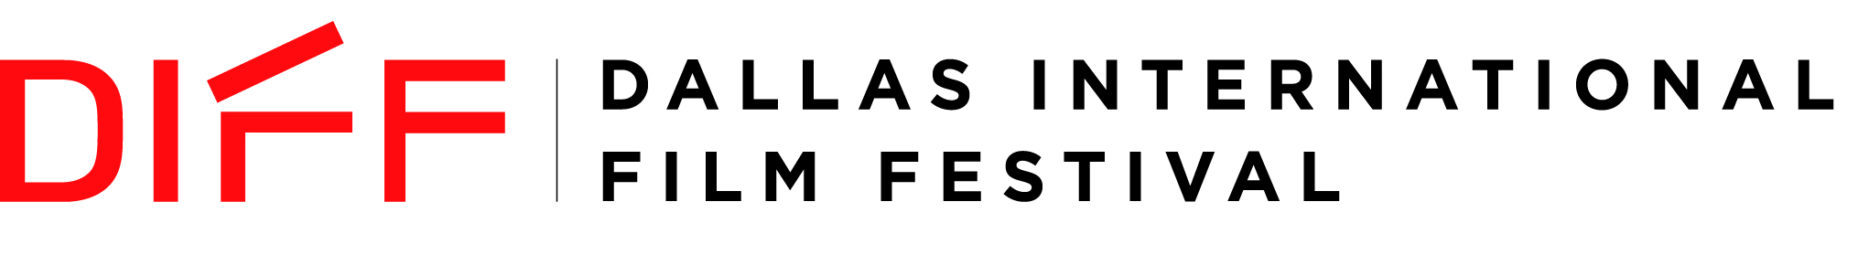 17th Dallas International Film Festival